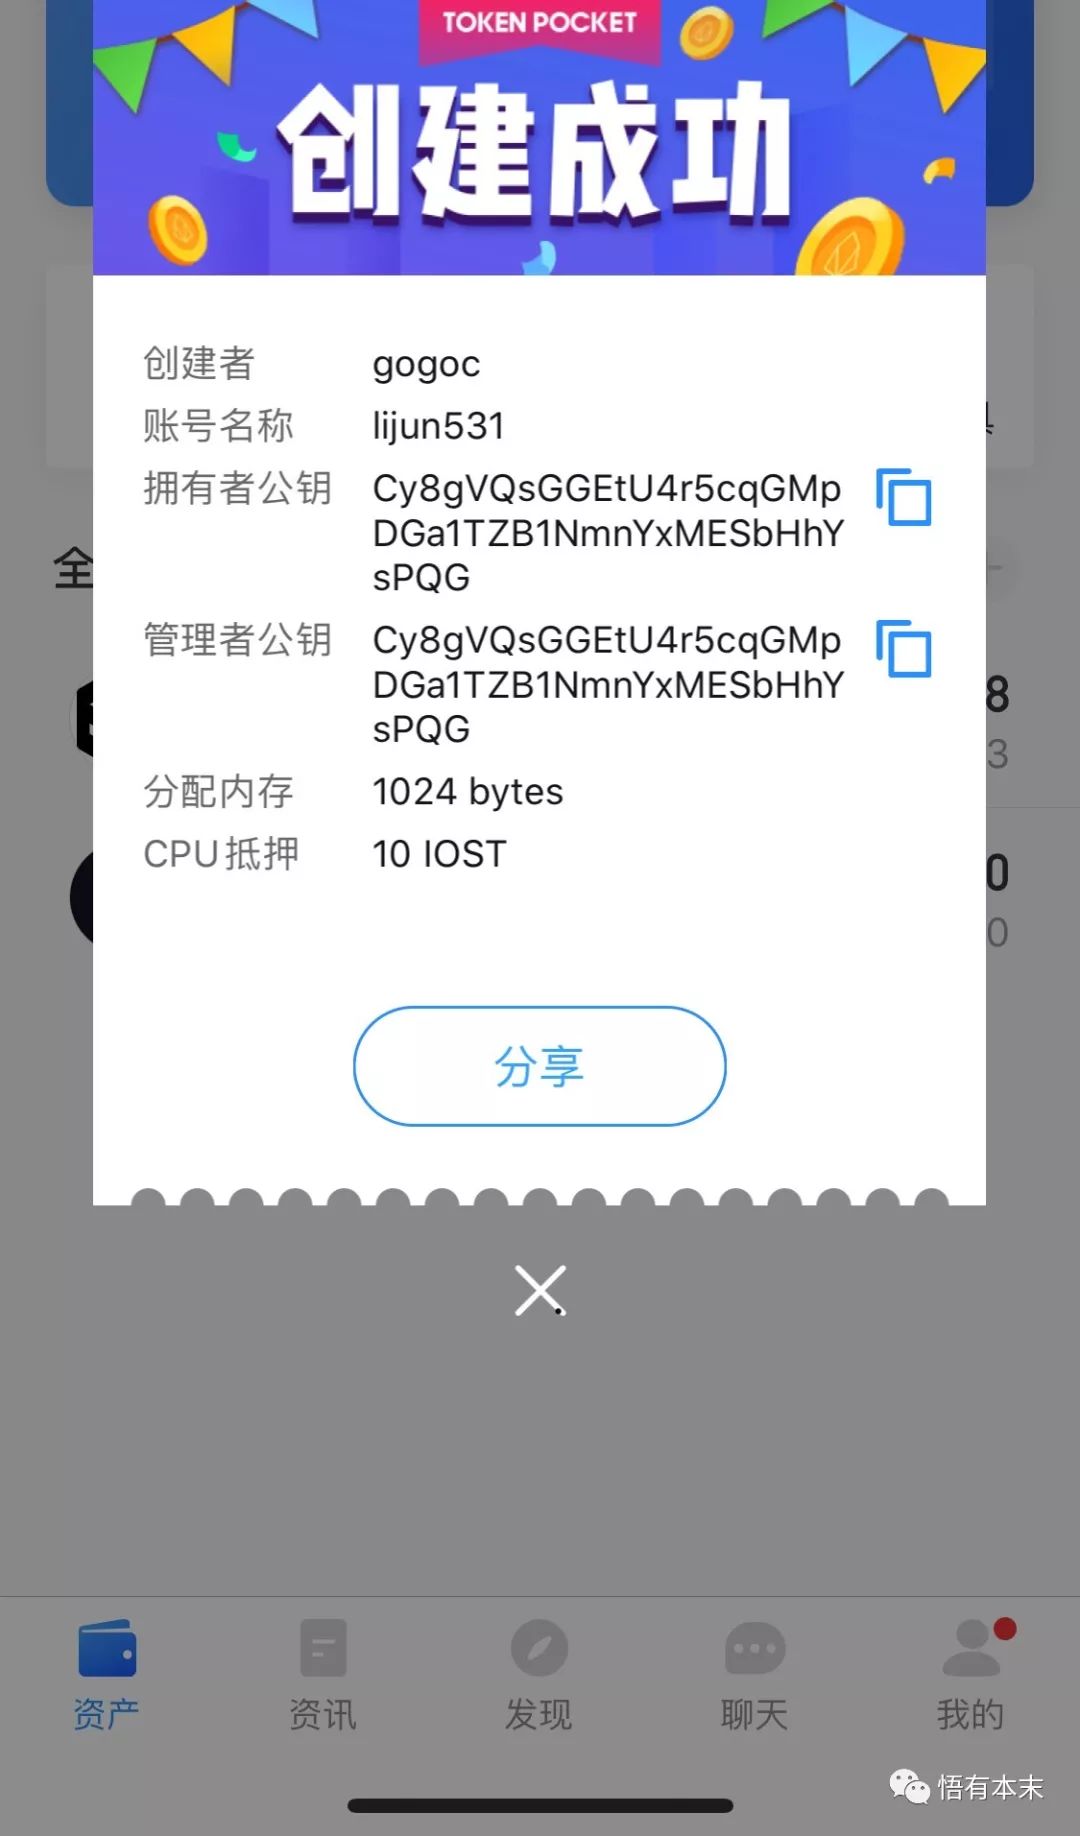 tokenpocket中文版、tokenpocket钱包官网